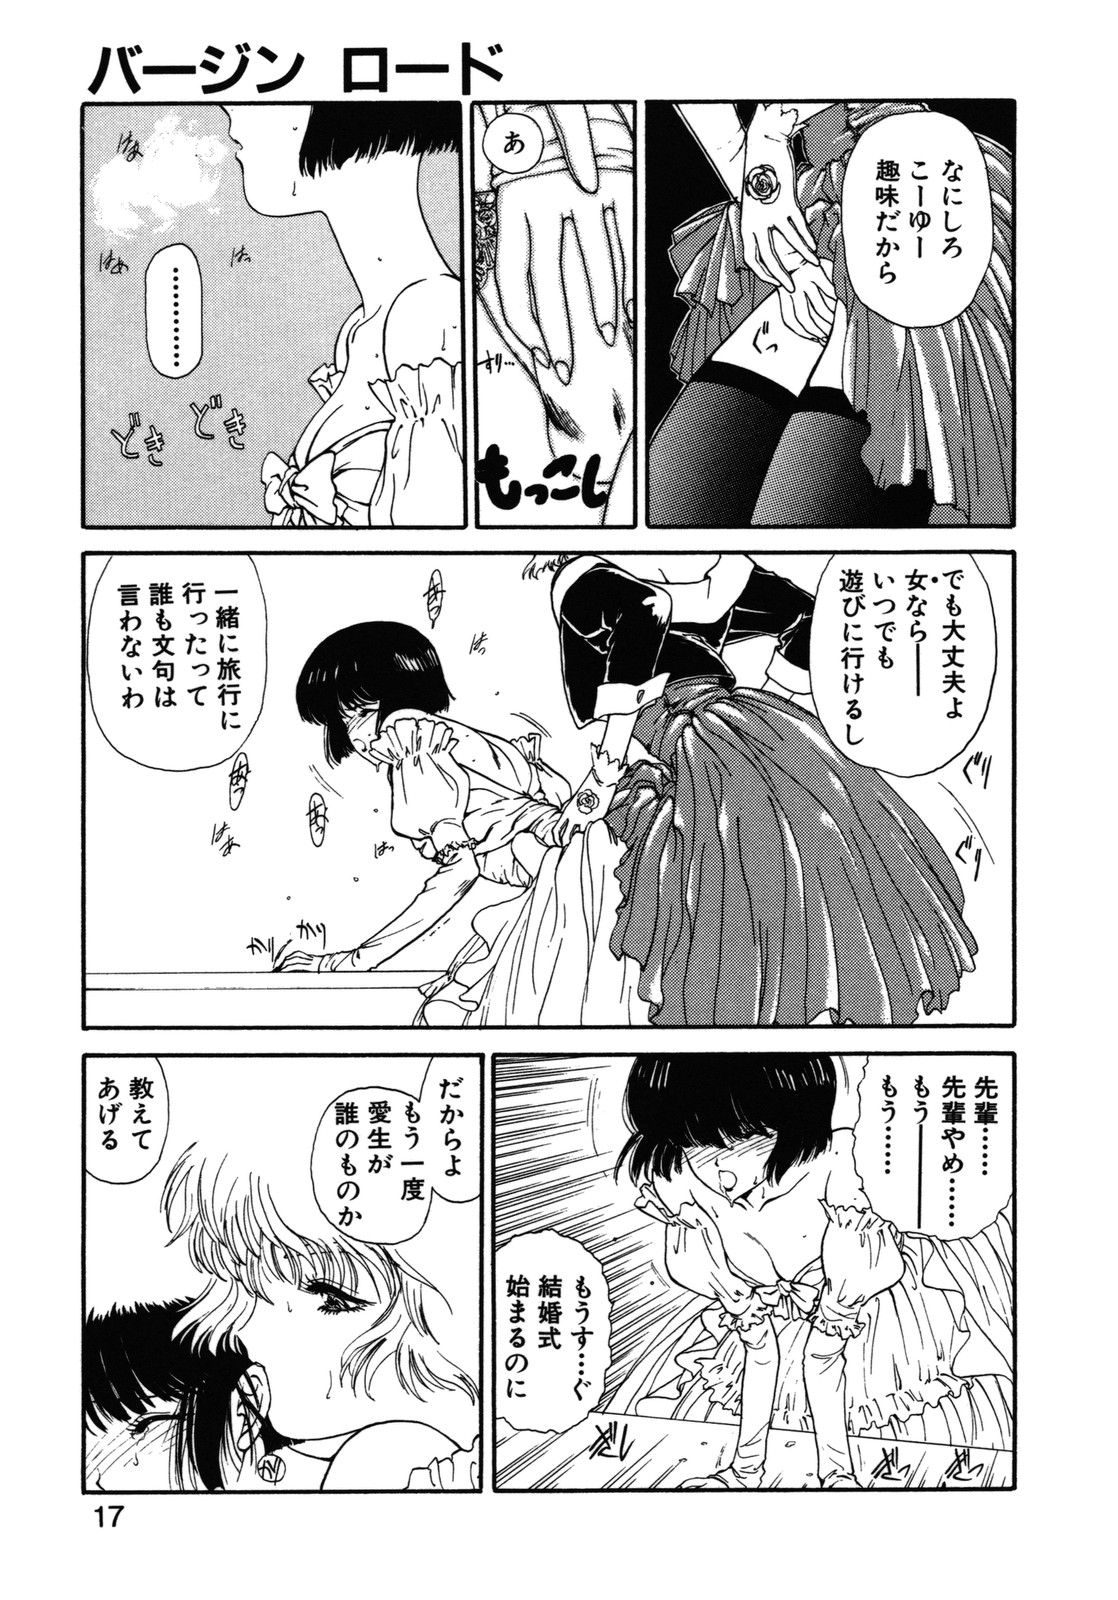 [Utatane Hiroyuki] COUNT DOWN page 18 full